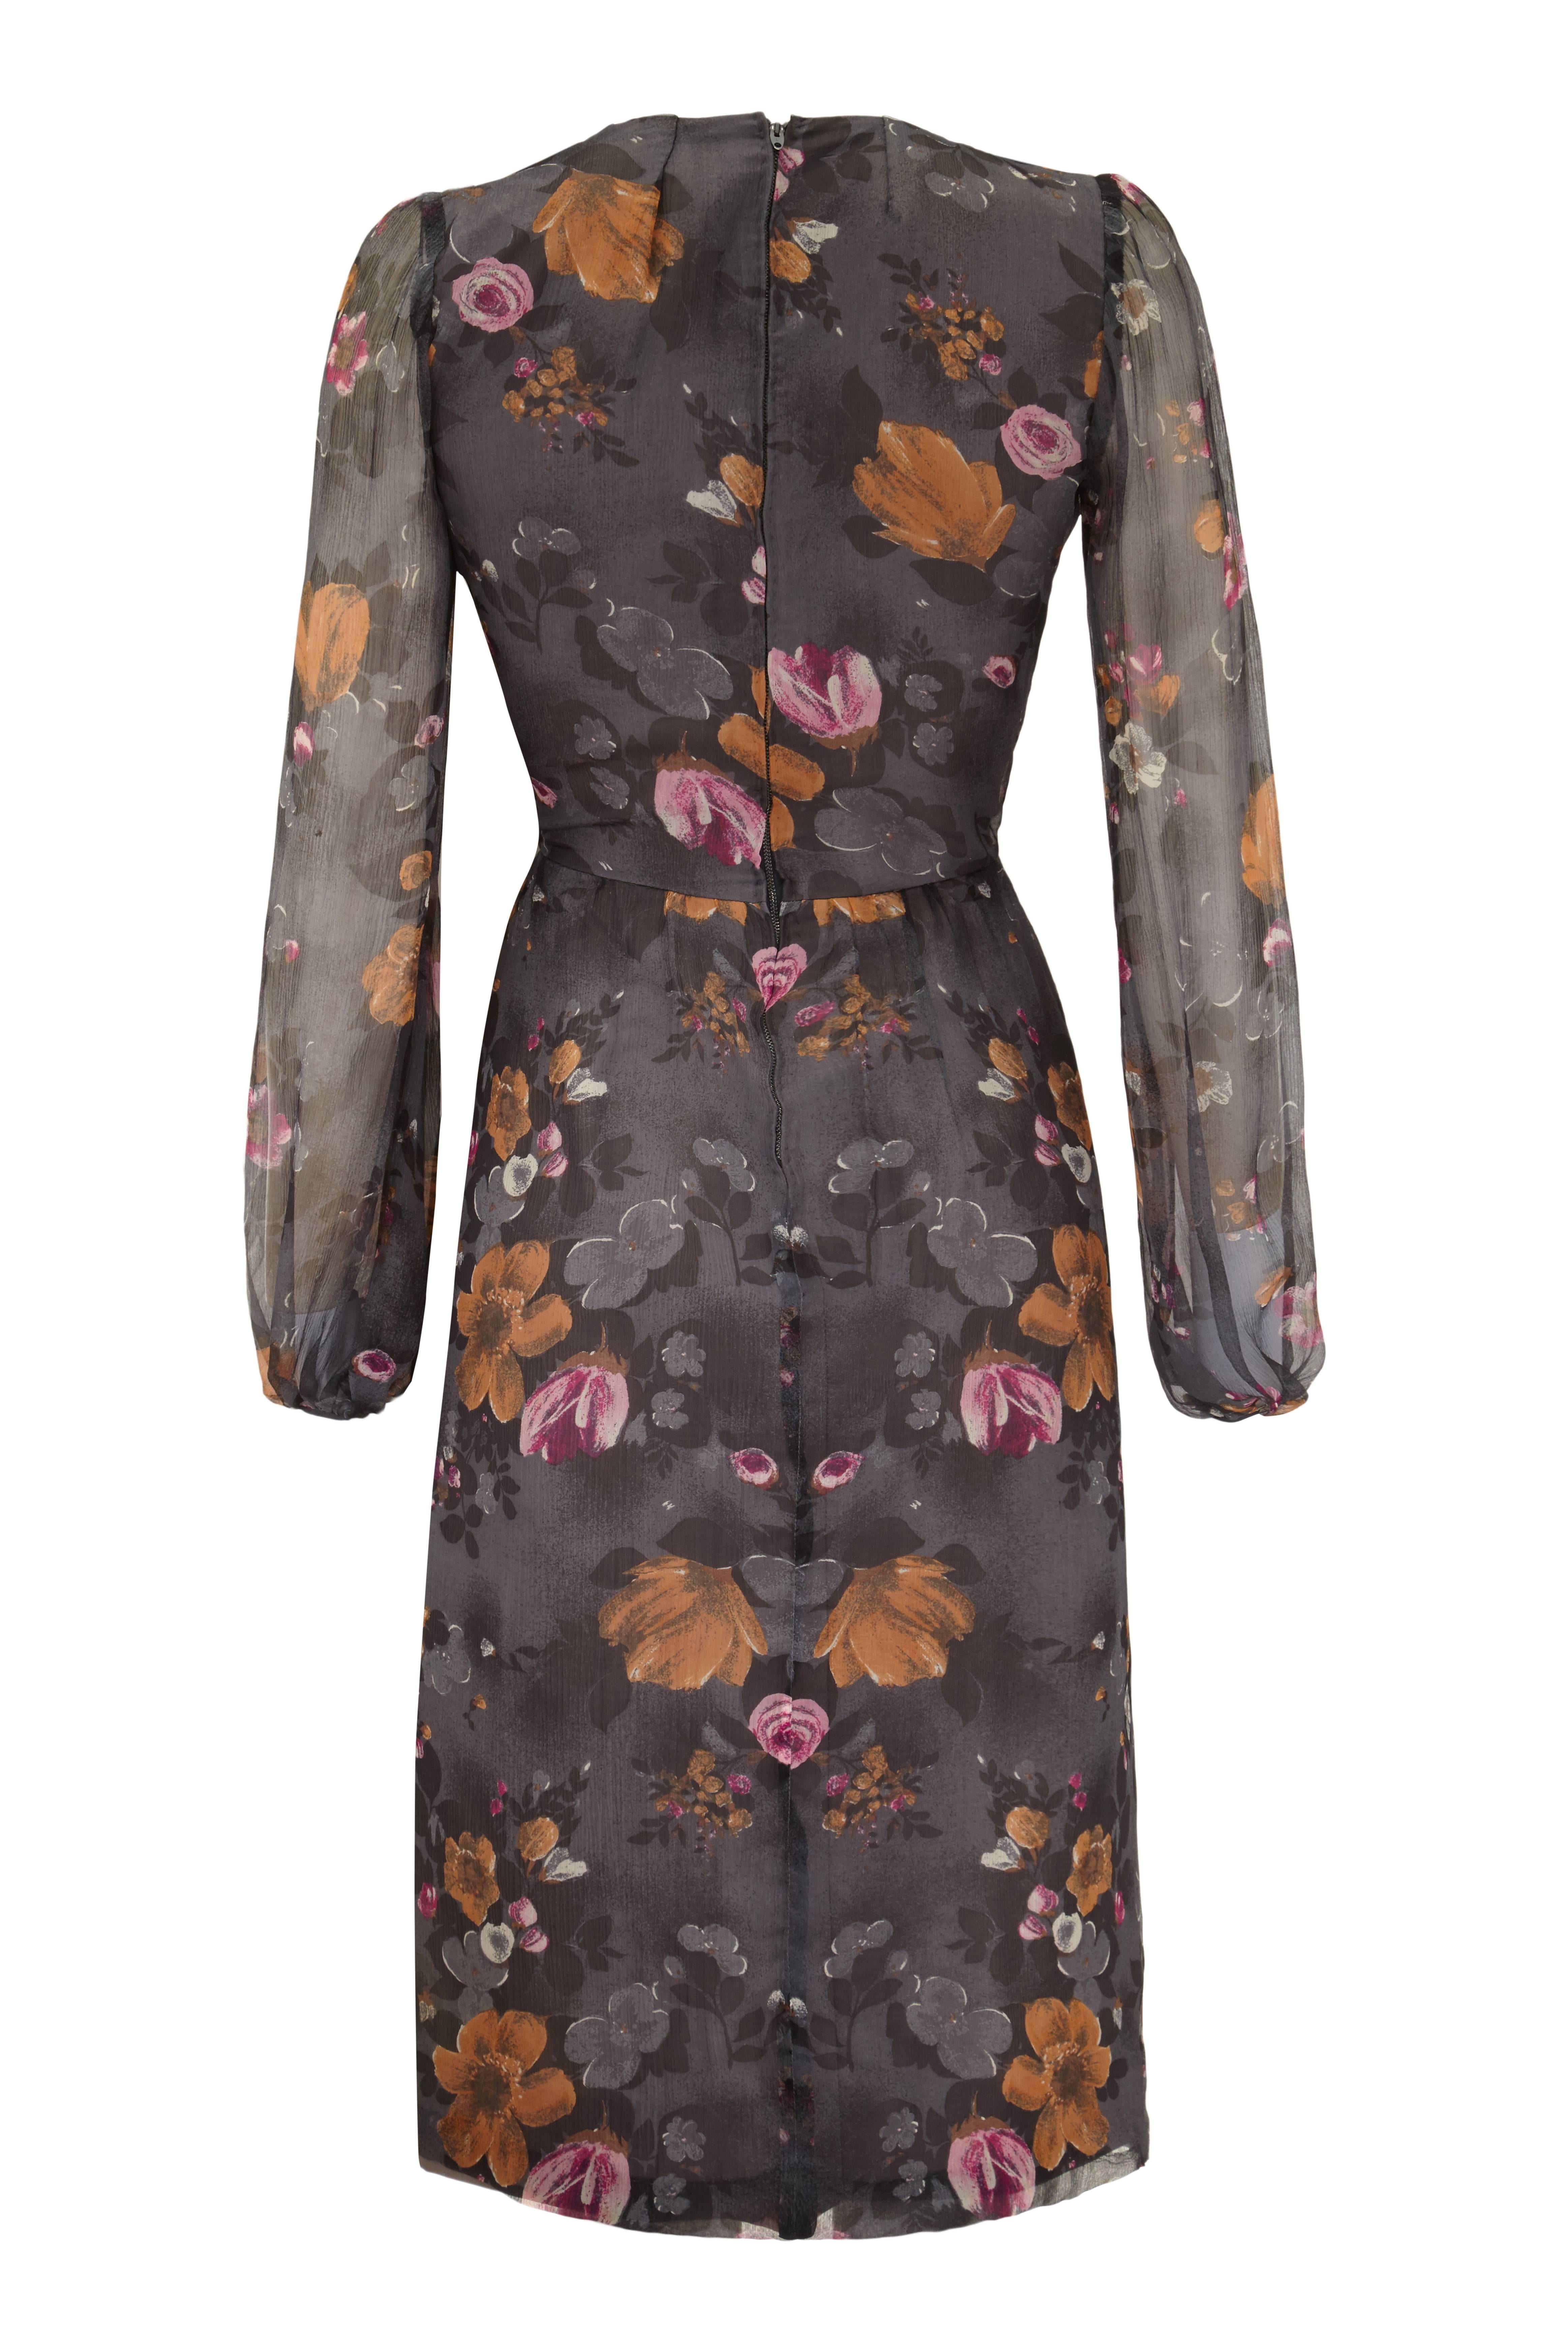 Cette jolie robe de couture vintage des années 1960 en mousseline de soie grise présente un imprimé floral discret en rose fuchsia, ocre foncé et charbon de bois. Elle est en excellent état vintage. Il n'y a pas d'étiquette, mais nous sommes en